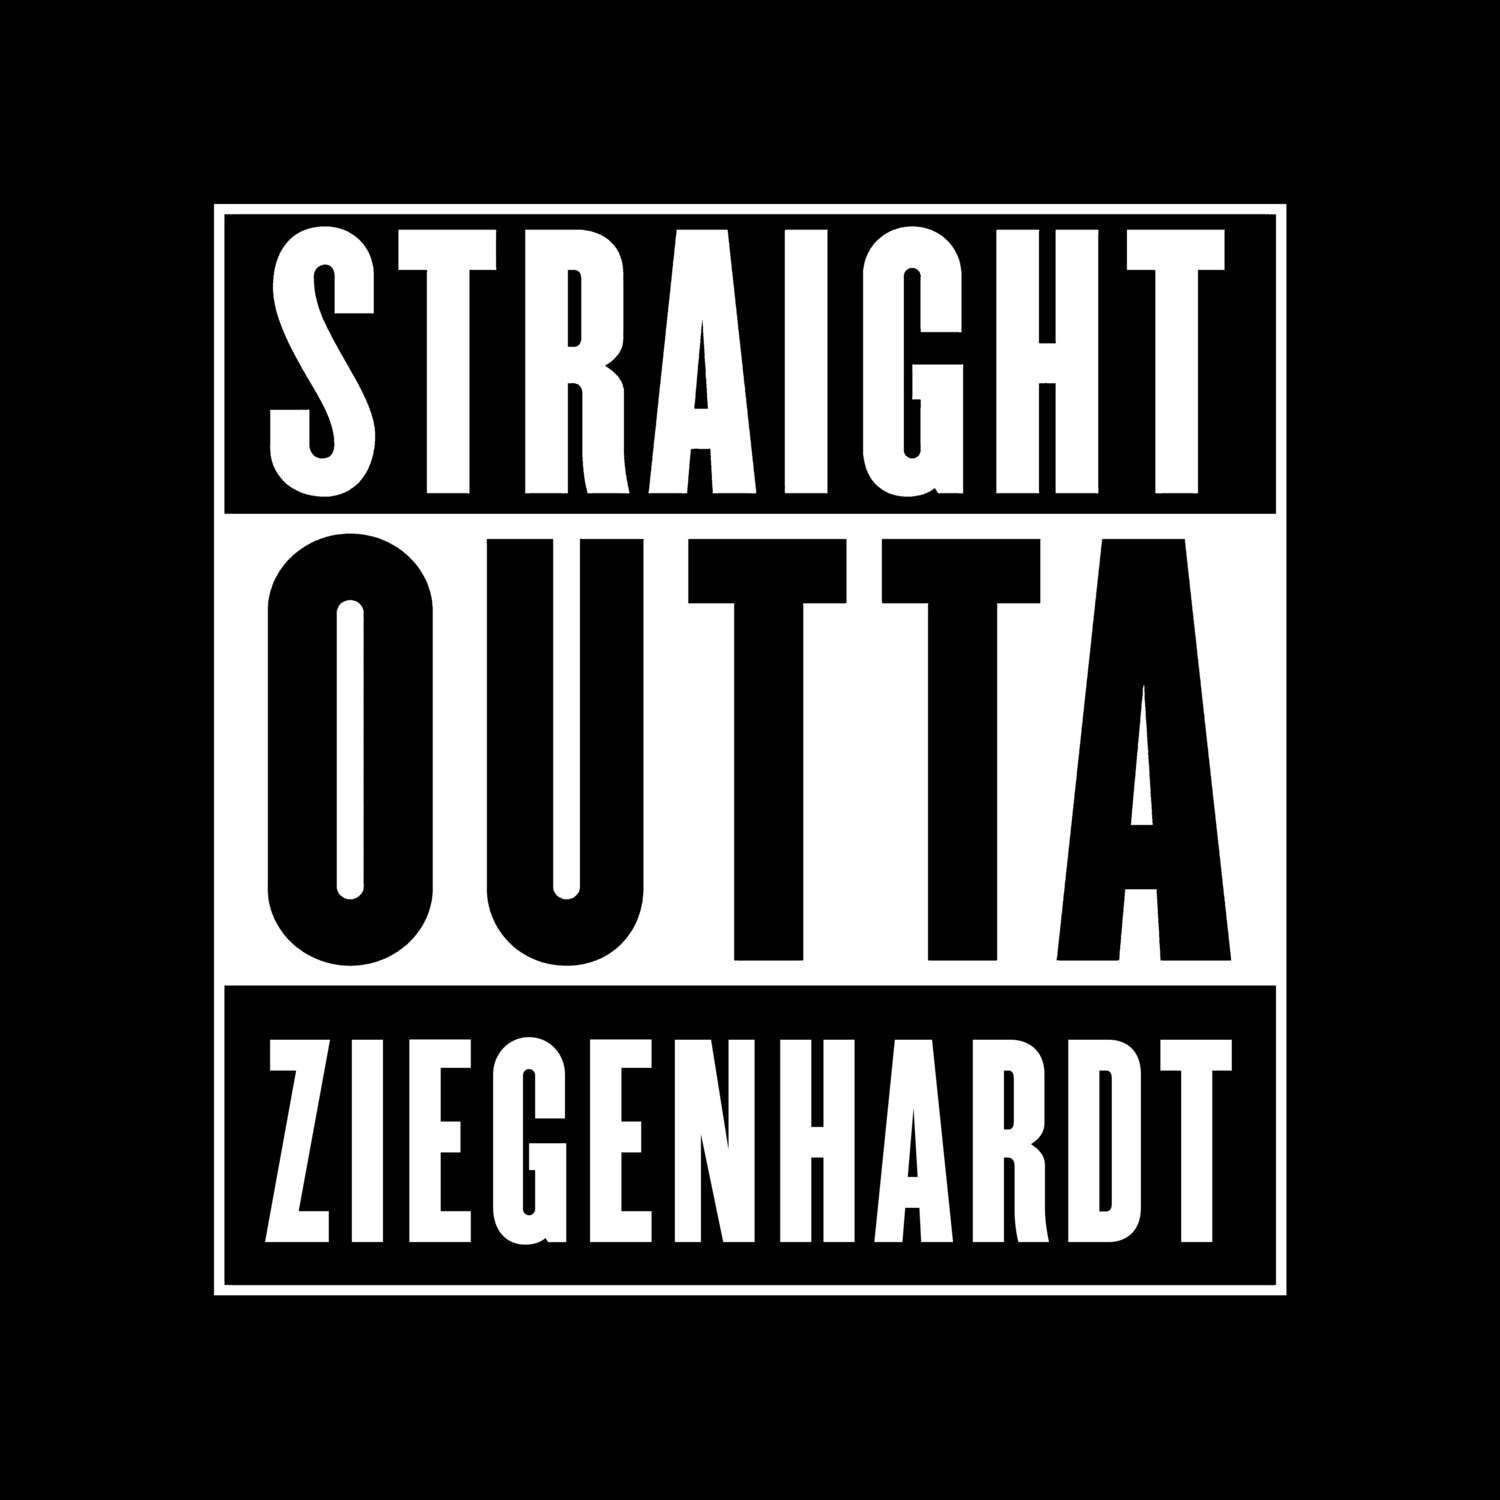 Ziegenhardt T-Shirt »Straight Outta«